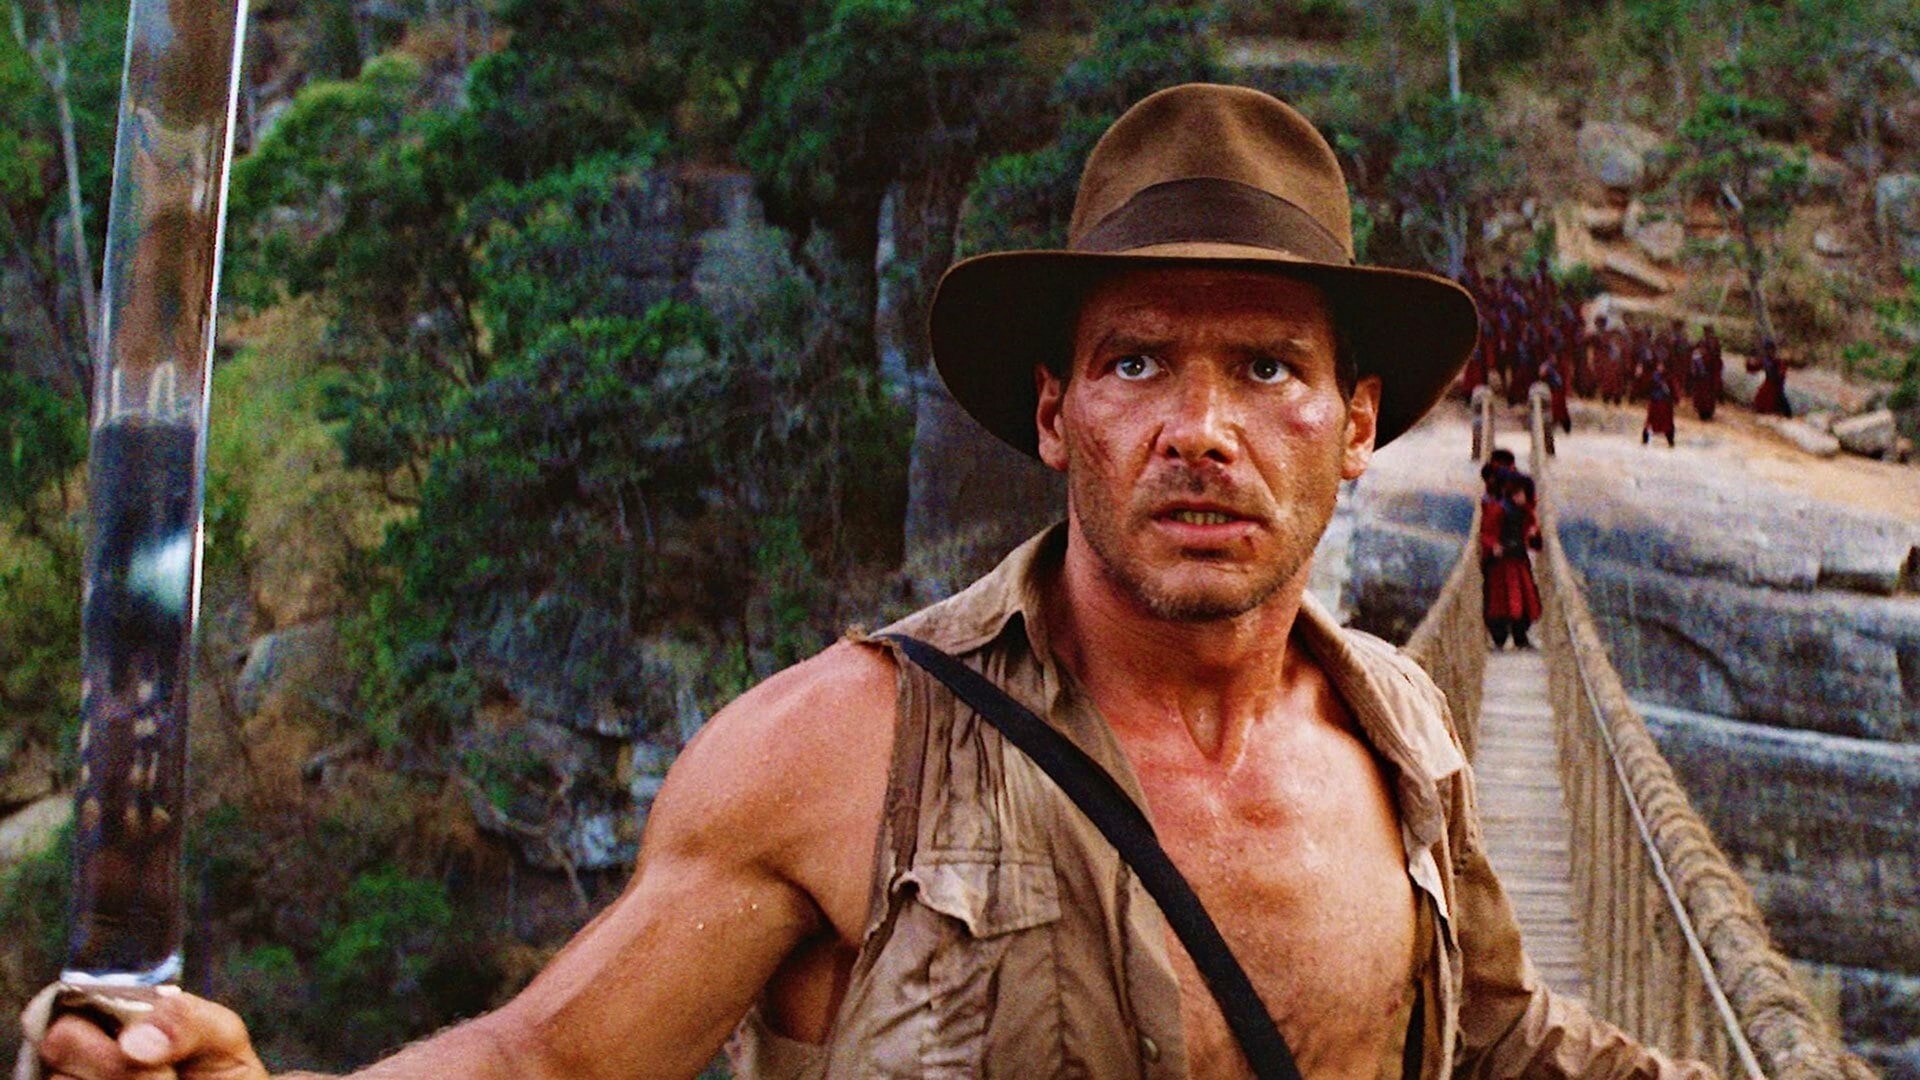 Indiana Jones y el Templo de la Perdición